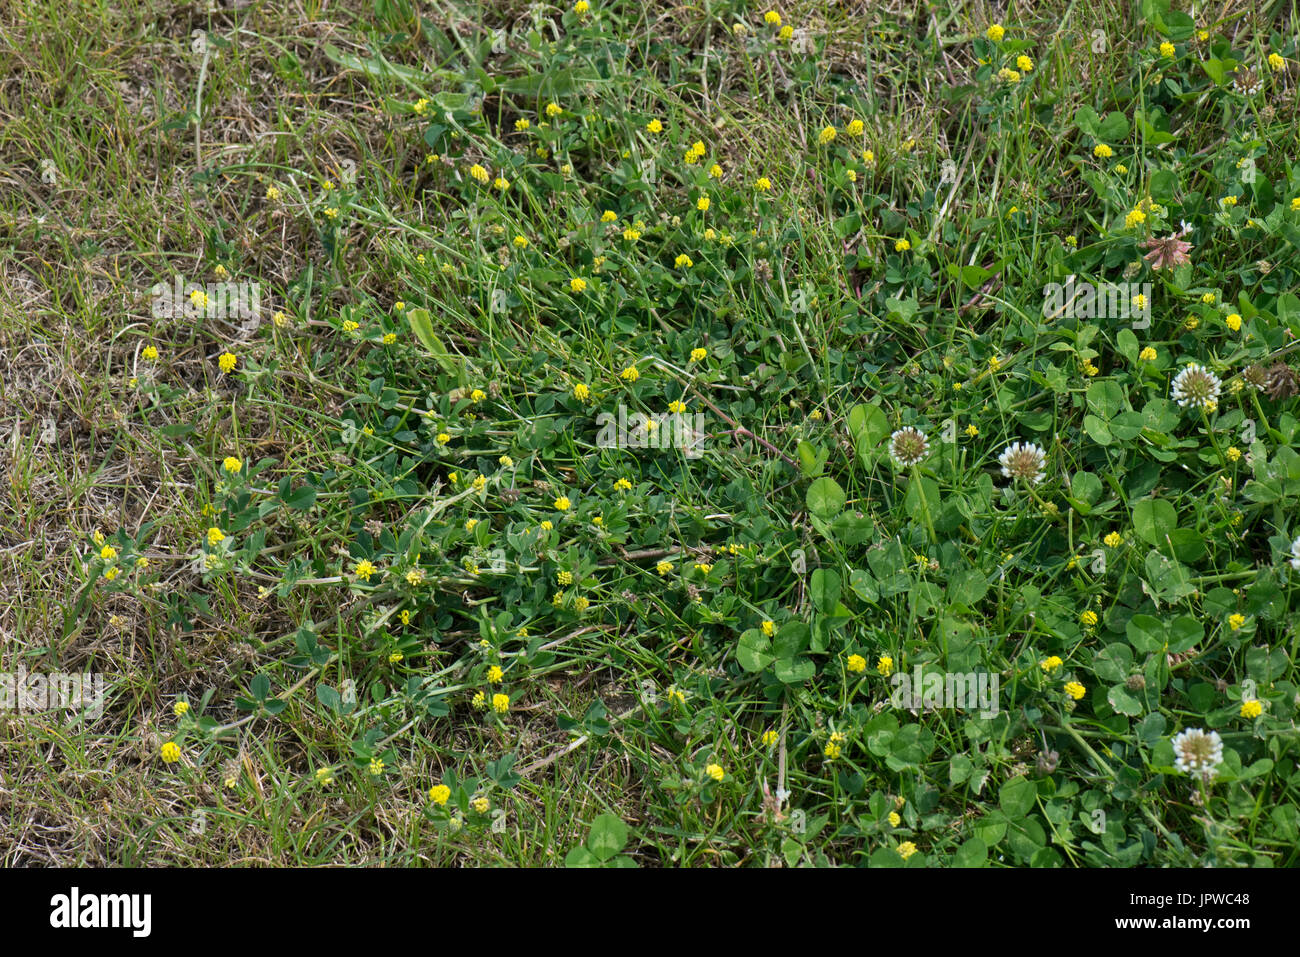 Gelbe Blüte weniger Kleeblatt, Trifolium Dubium, Verbreitung der Pflanze  mit weiß-Klee im Rasen Rasen Rasen, Berkshire, Juni Stockfotografie - Alamy